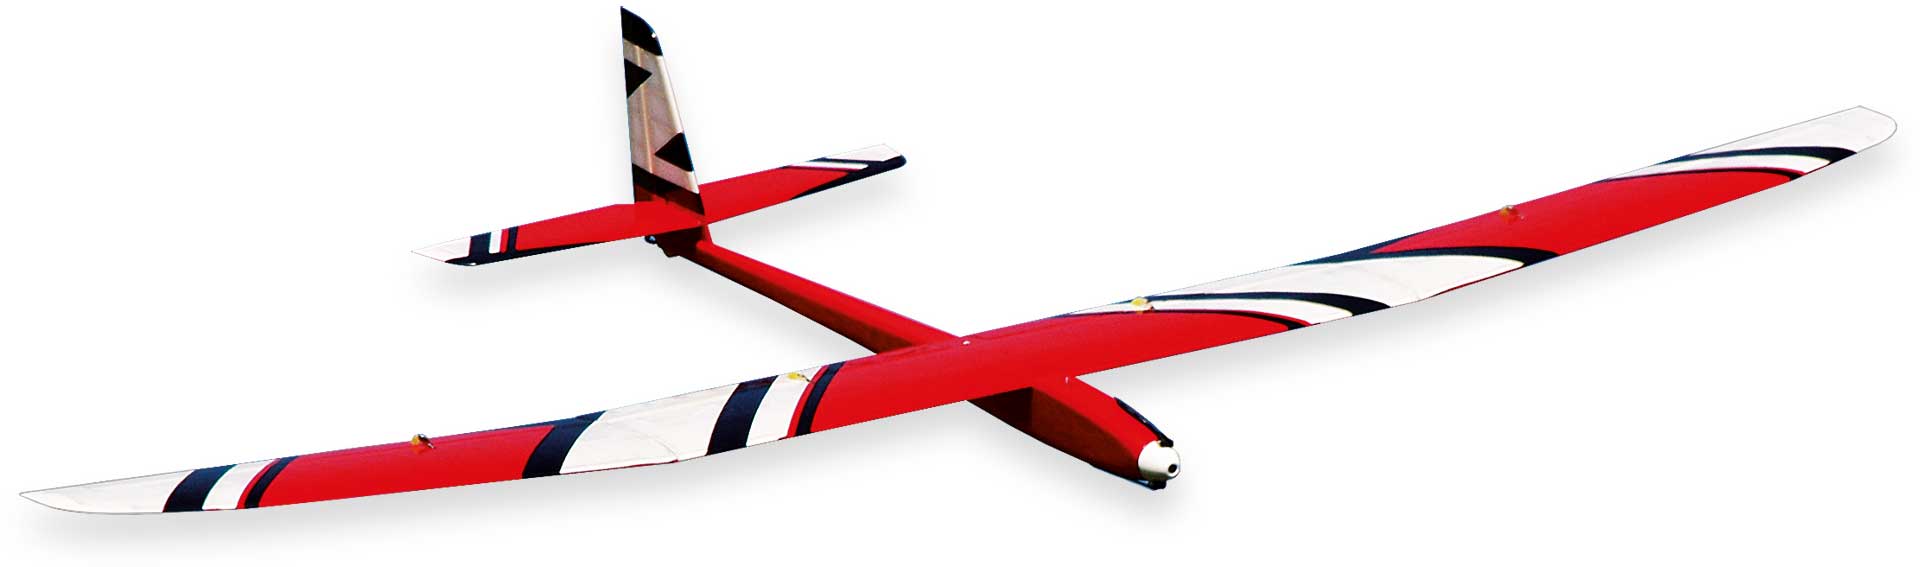 Robbe Modellsport Slider Q High Performance 4 volets Modèle d'avion électrique, kit contrepla